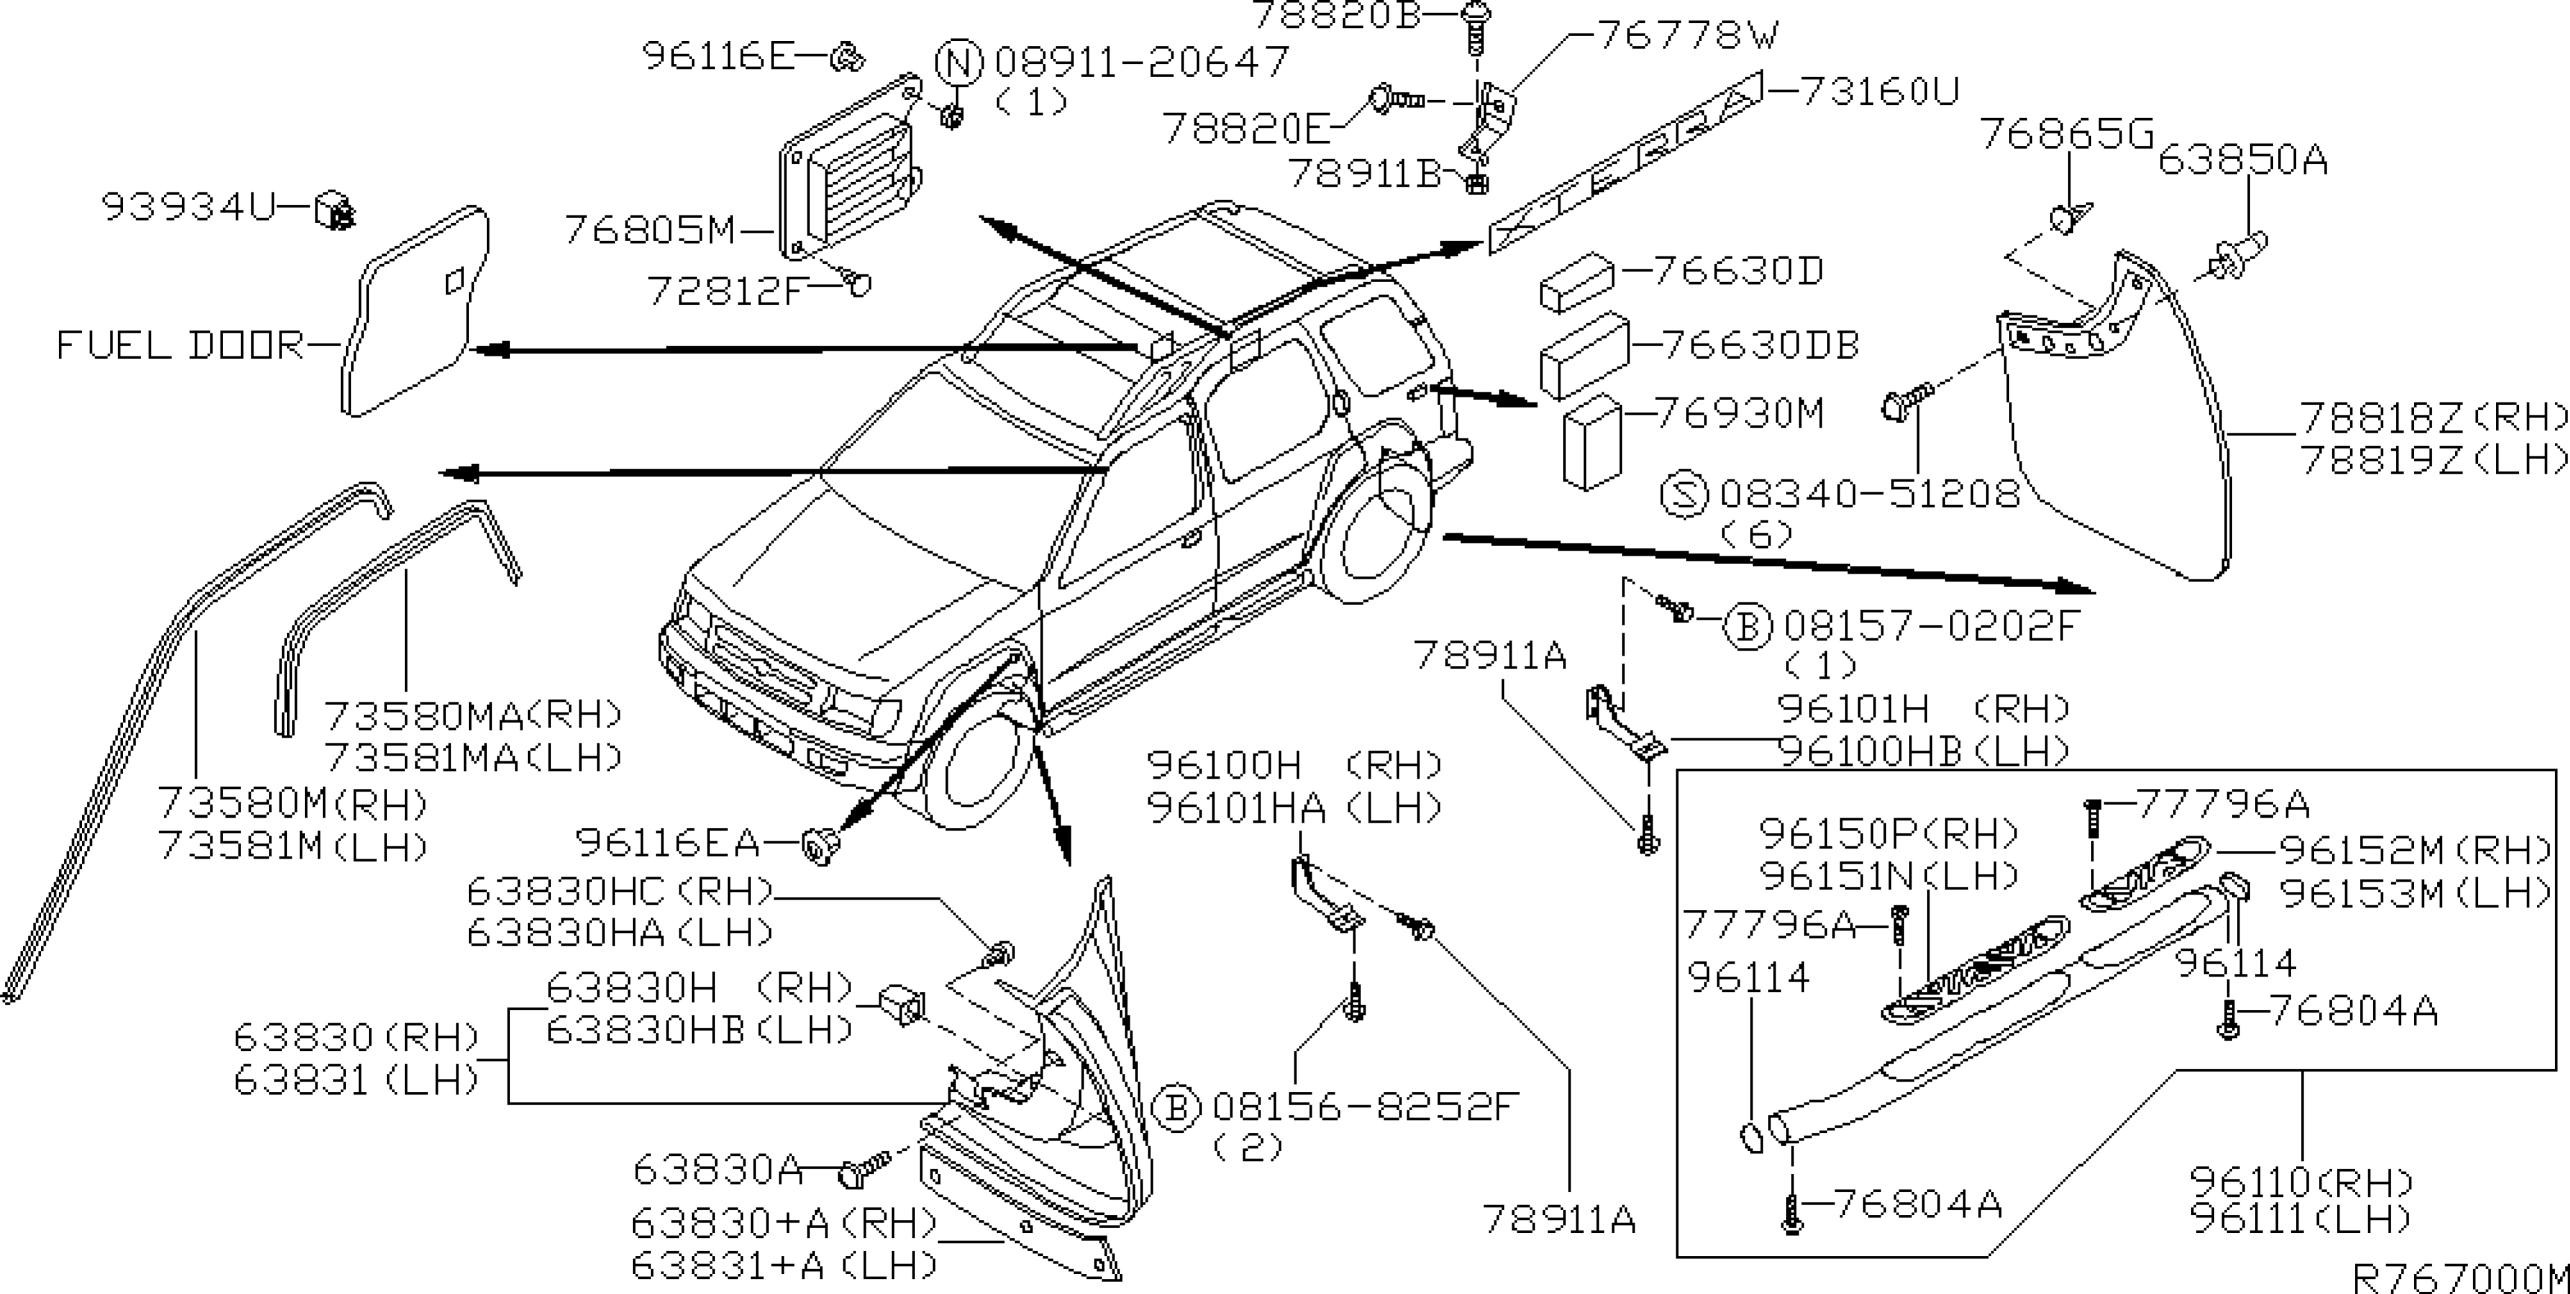 2000 Nissan Frontier Parts Diagram Nissan Altima Interior Parts Diagram Wiring Diagram Database • Of 2000 Nissan Frontier Parts Diagram